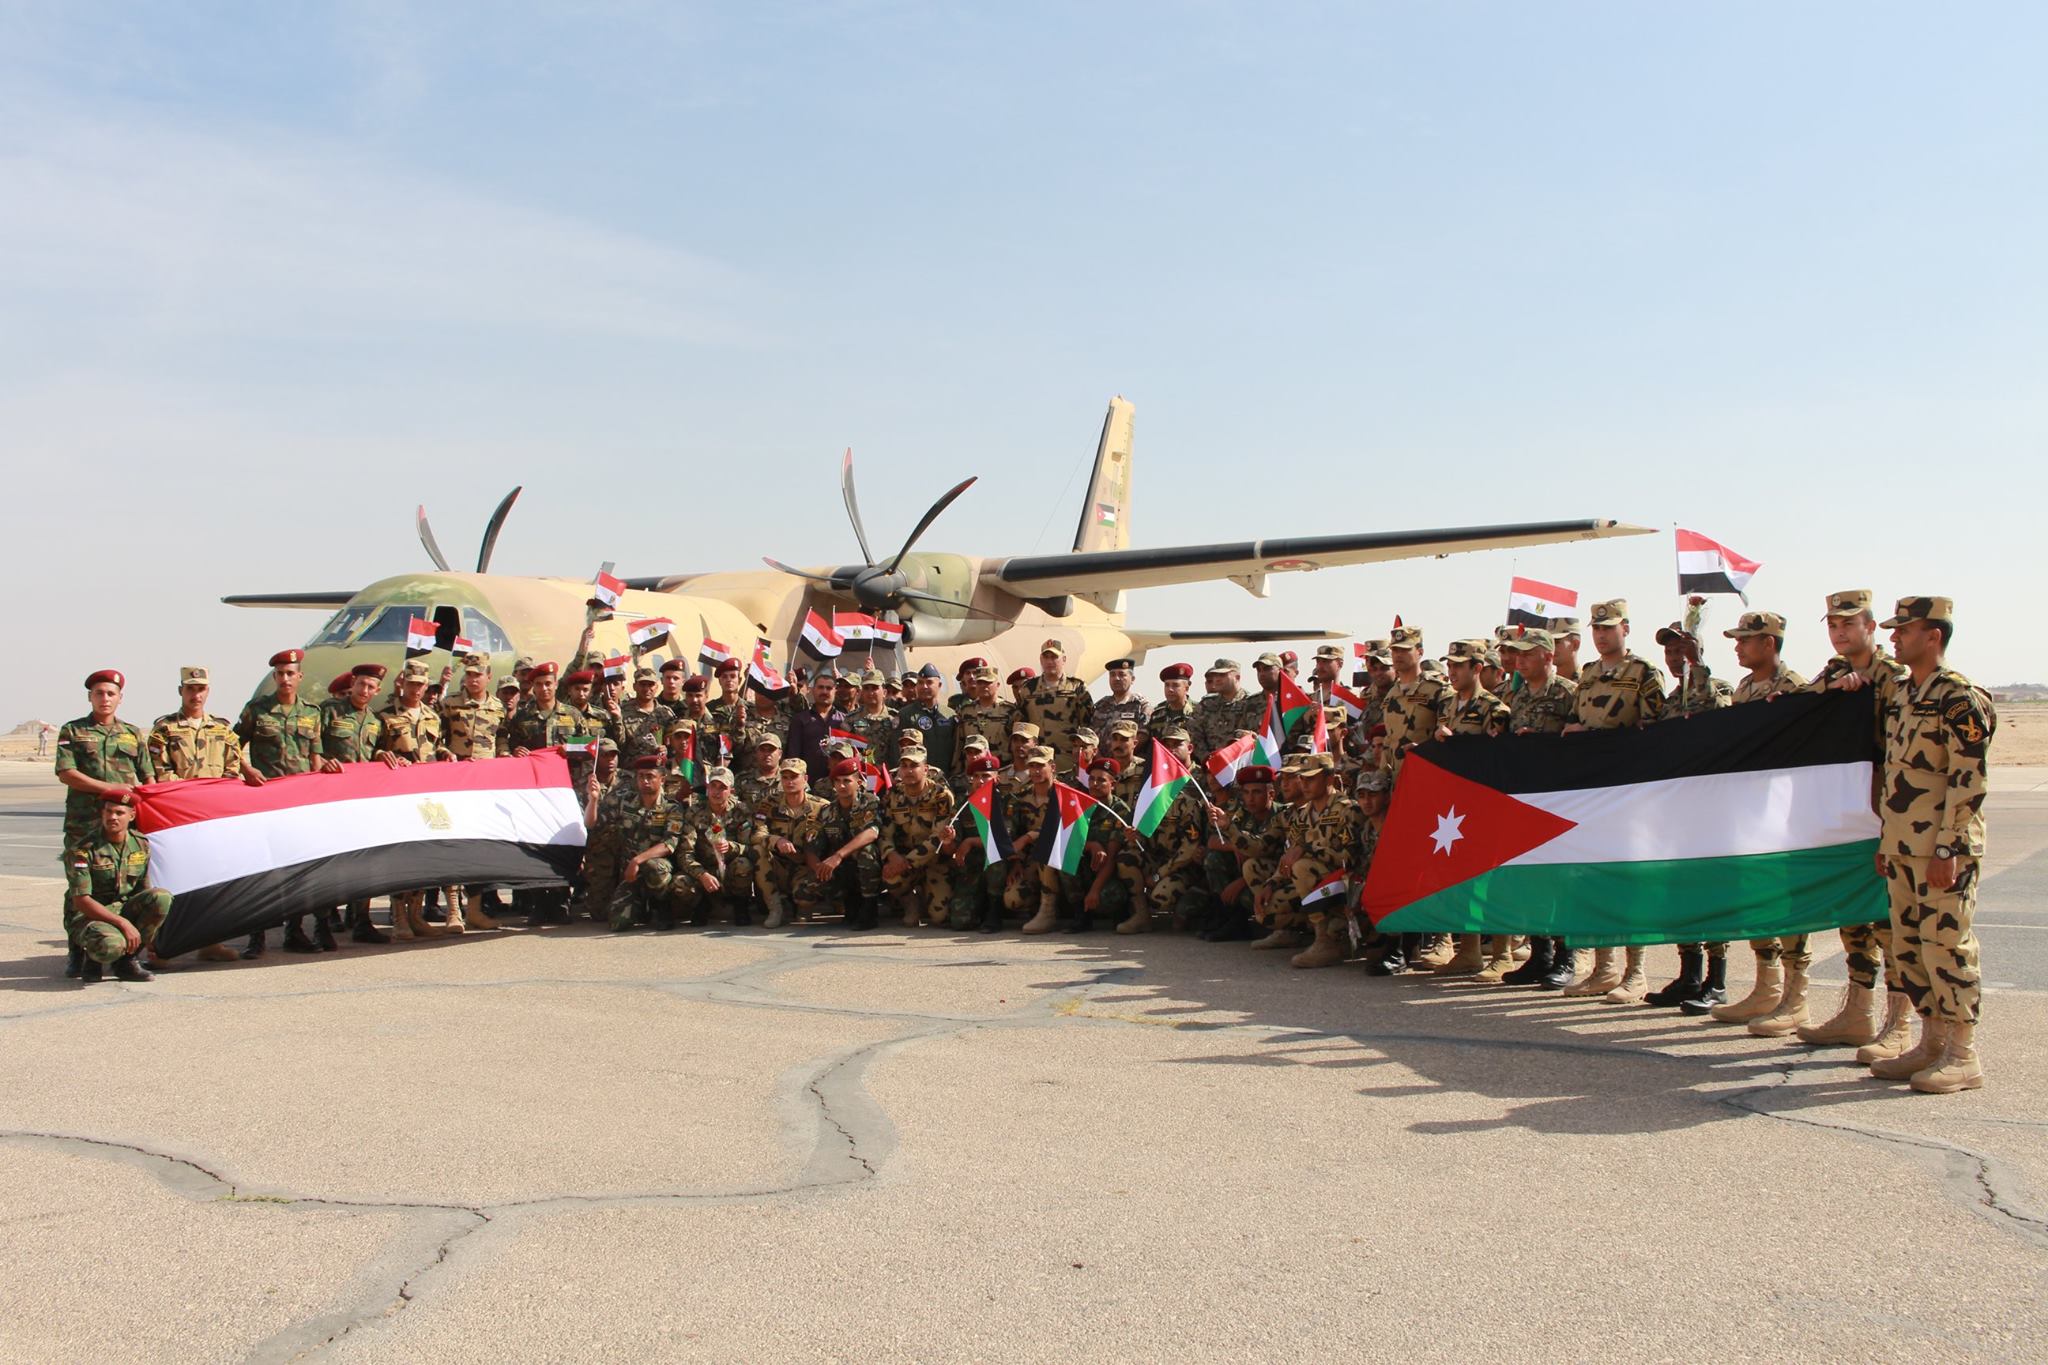 صور القوات المسلحة المصرية والأردنية